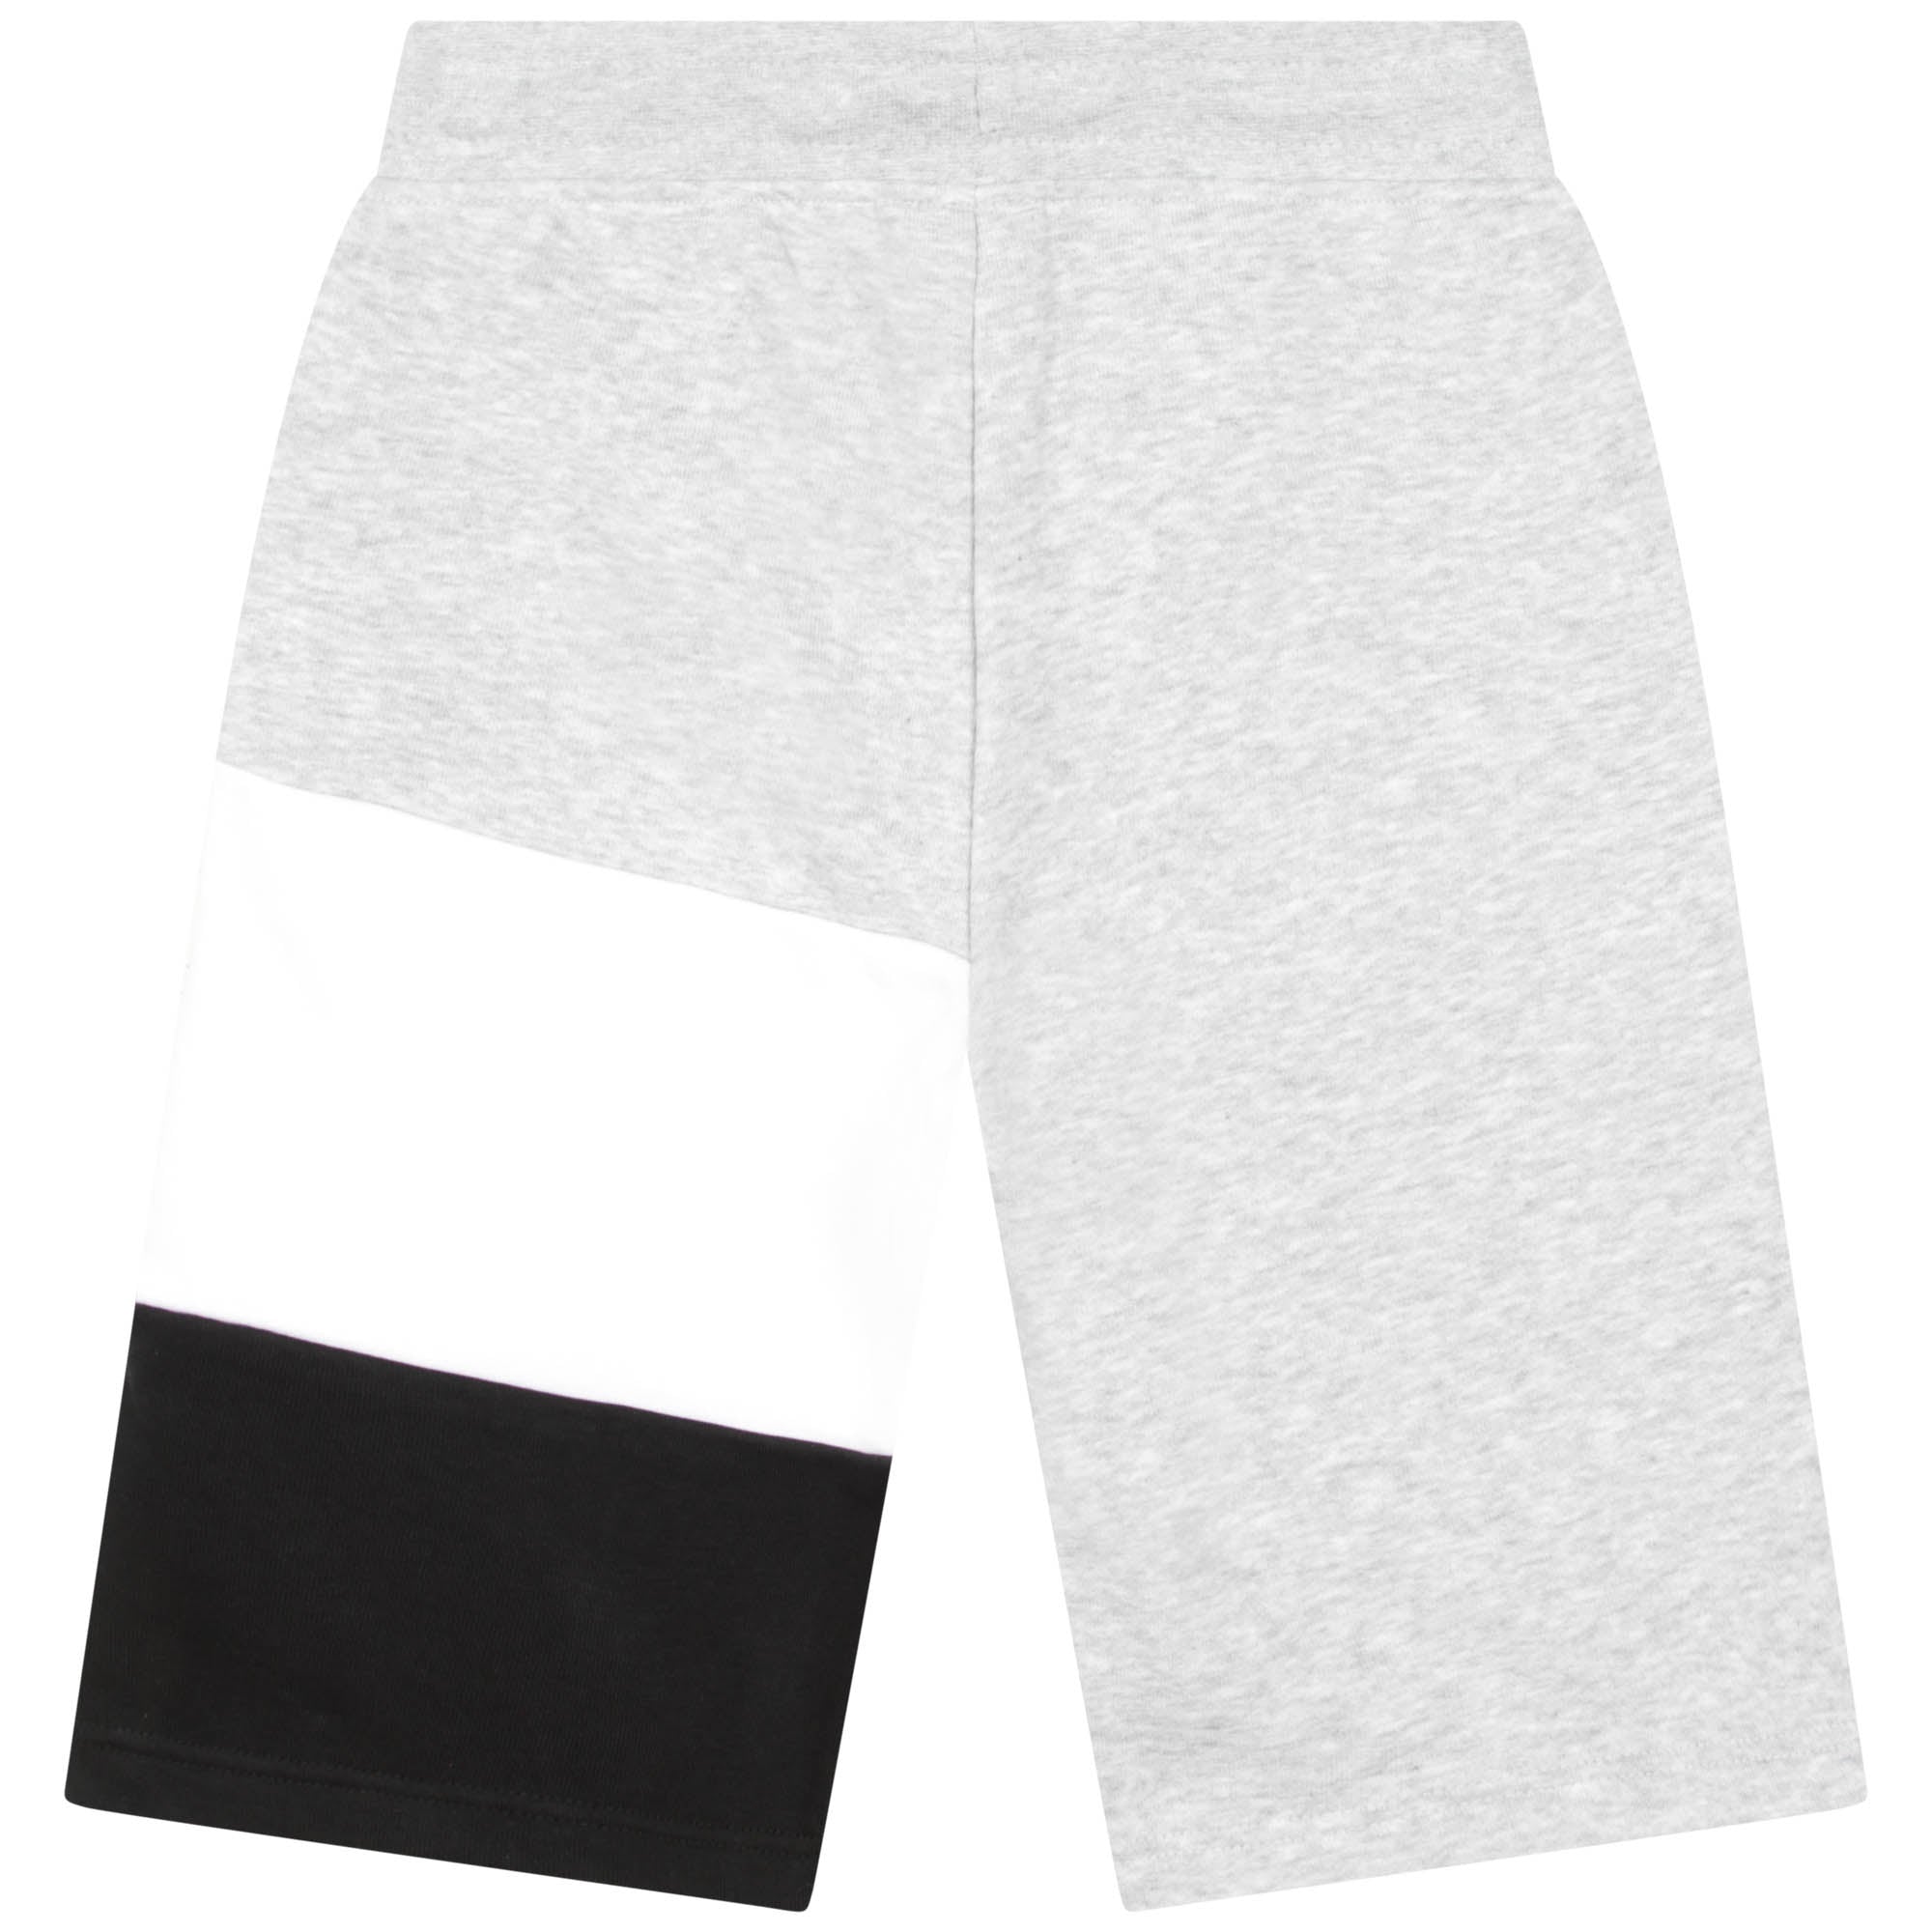 Boys Grey Logo Cotton Shorts